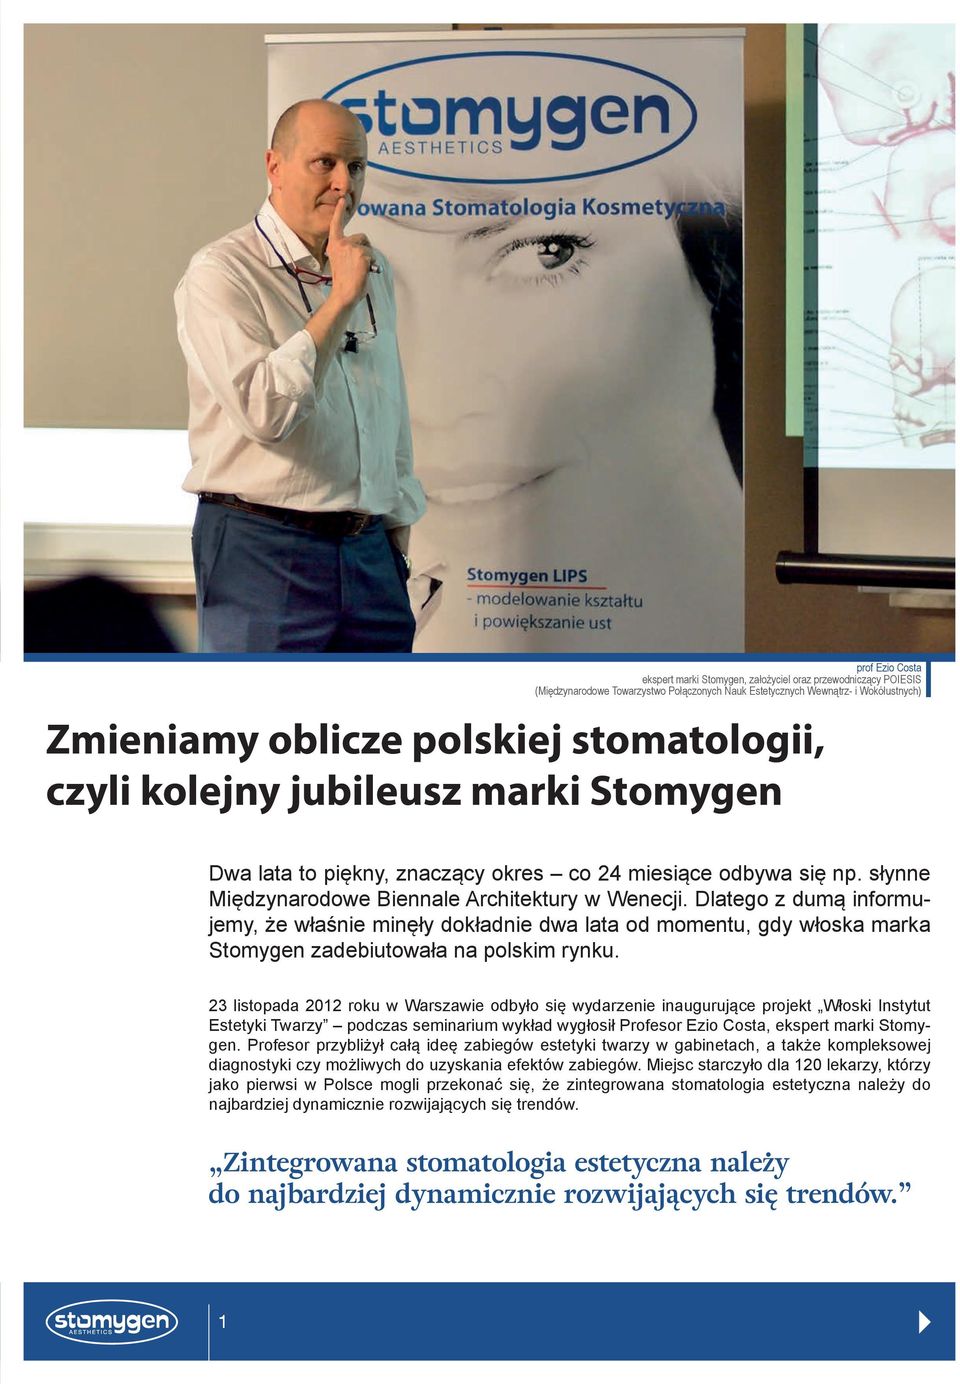 Dlatego z dumą informujemy, że właśnie minęły dokładnie dwa lata od momentu, gdy włoska marka Stomygen zadebiutowała na polskim rynku.